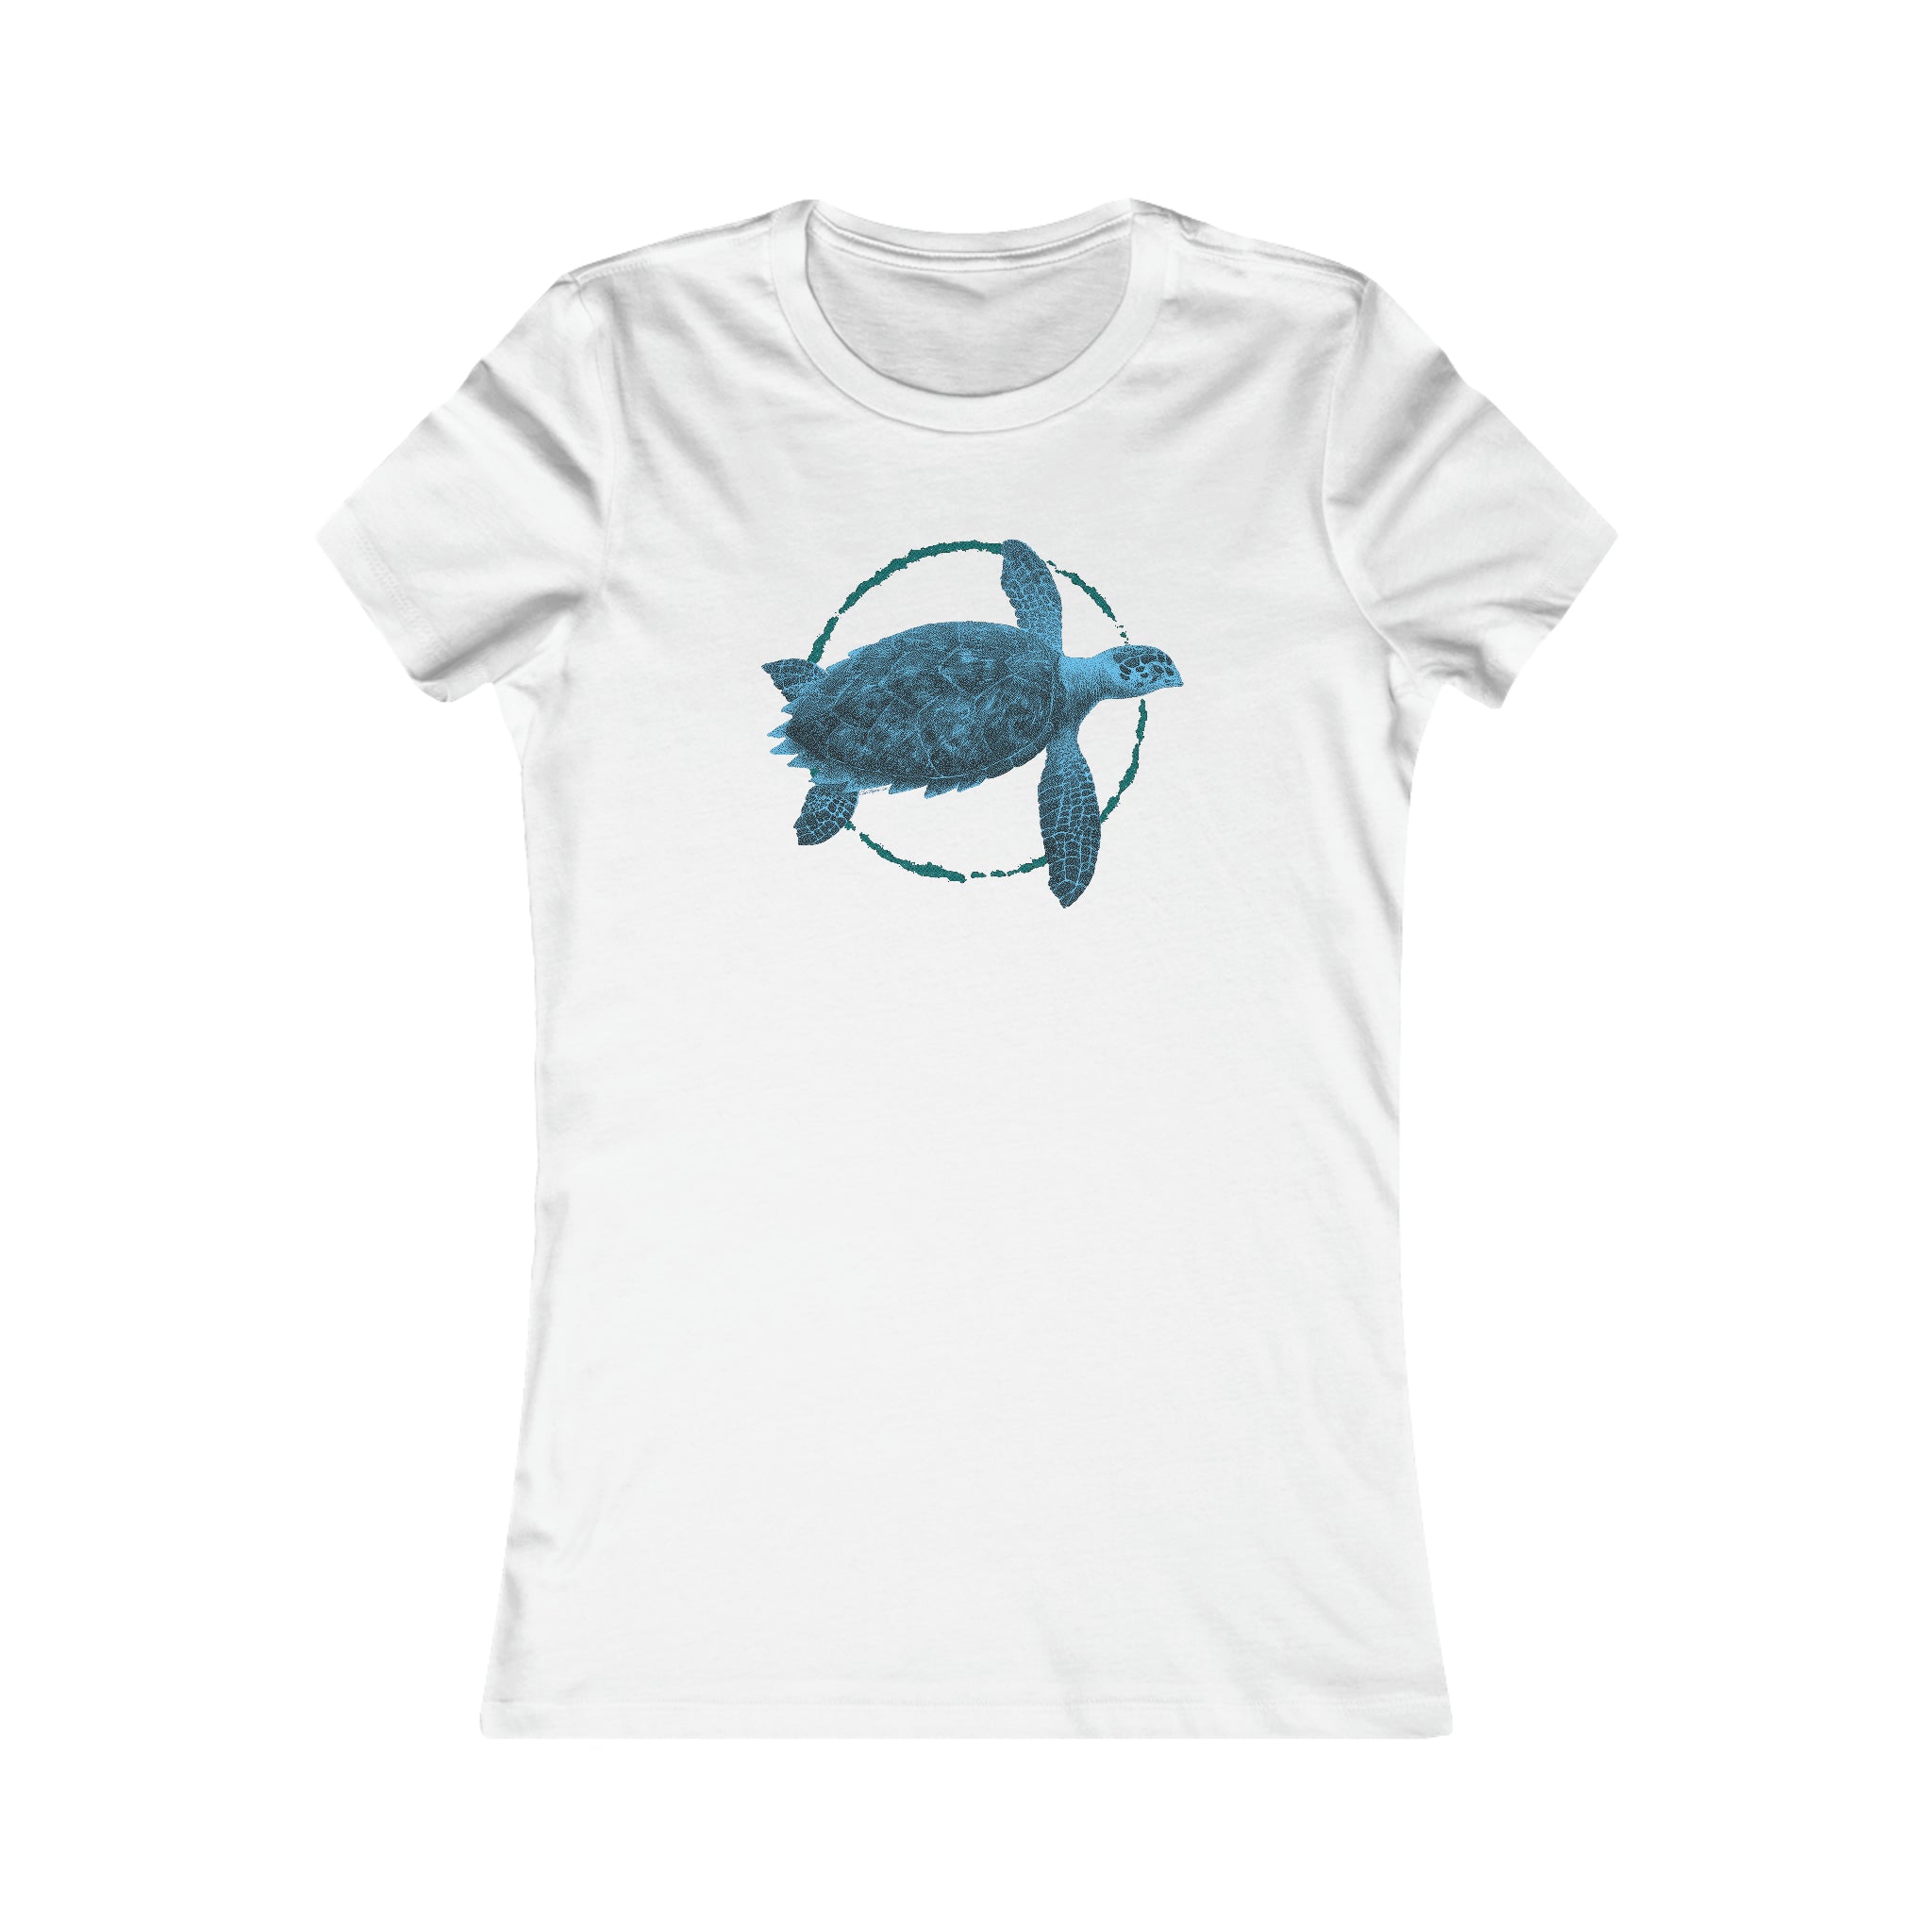 Hawksbill turtle Women's Tee, Sea Turtle shirts, Wearable art, Women's shirts